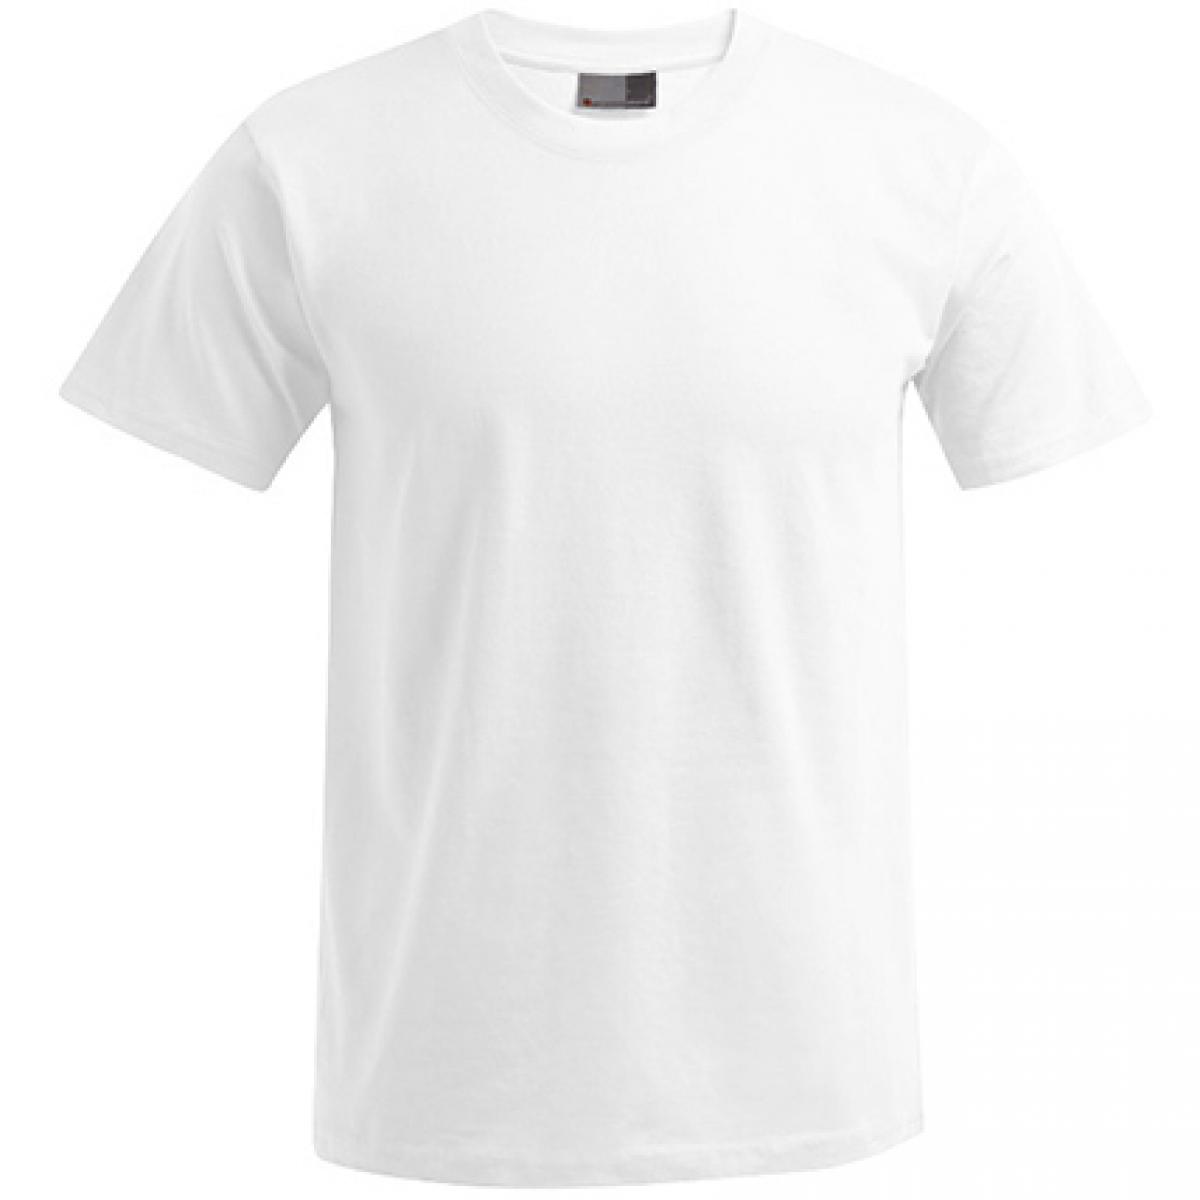 Hersteller: Promodoro Herstellernummer: 3000/3099 Artikelbezeichnung: Men´s Premium Herren T-Shirt - bis 5XL Farbe: White